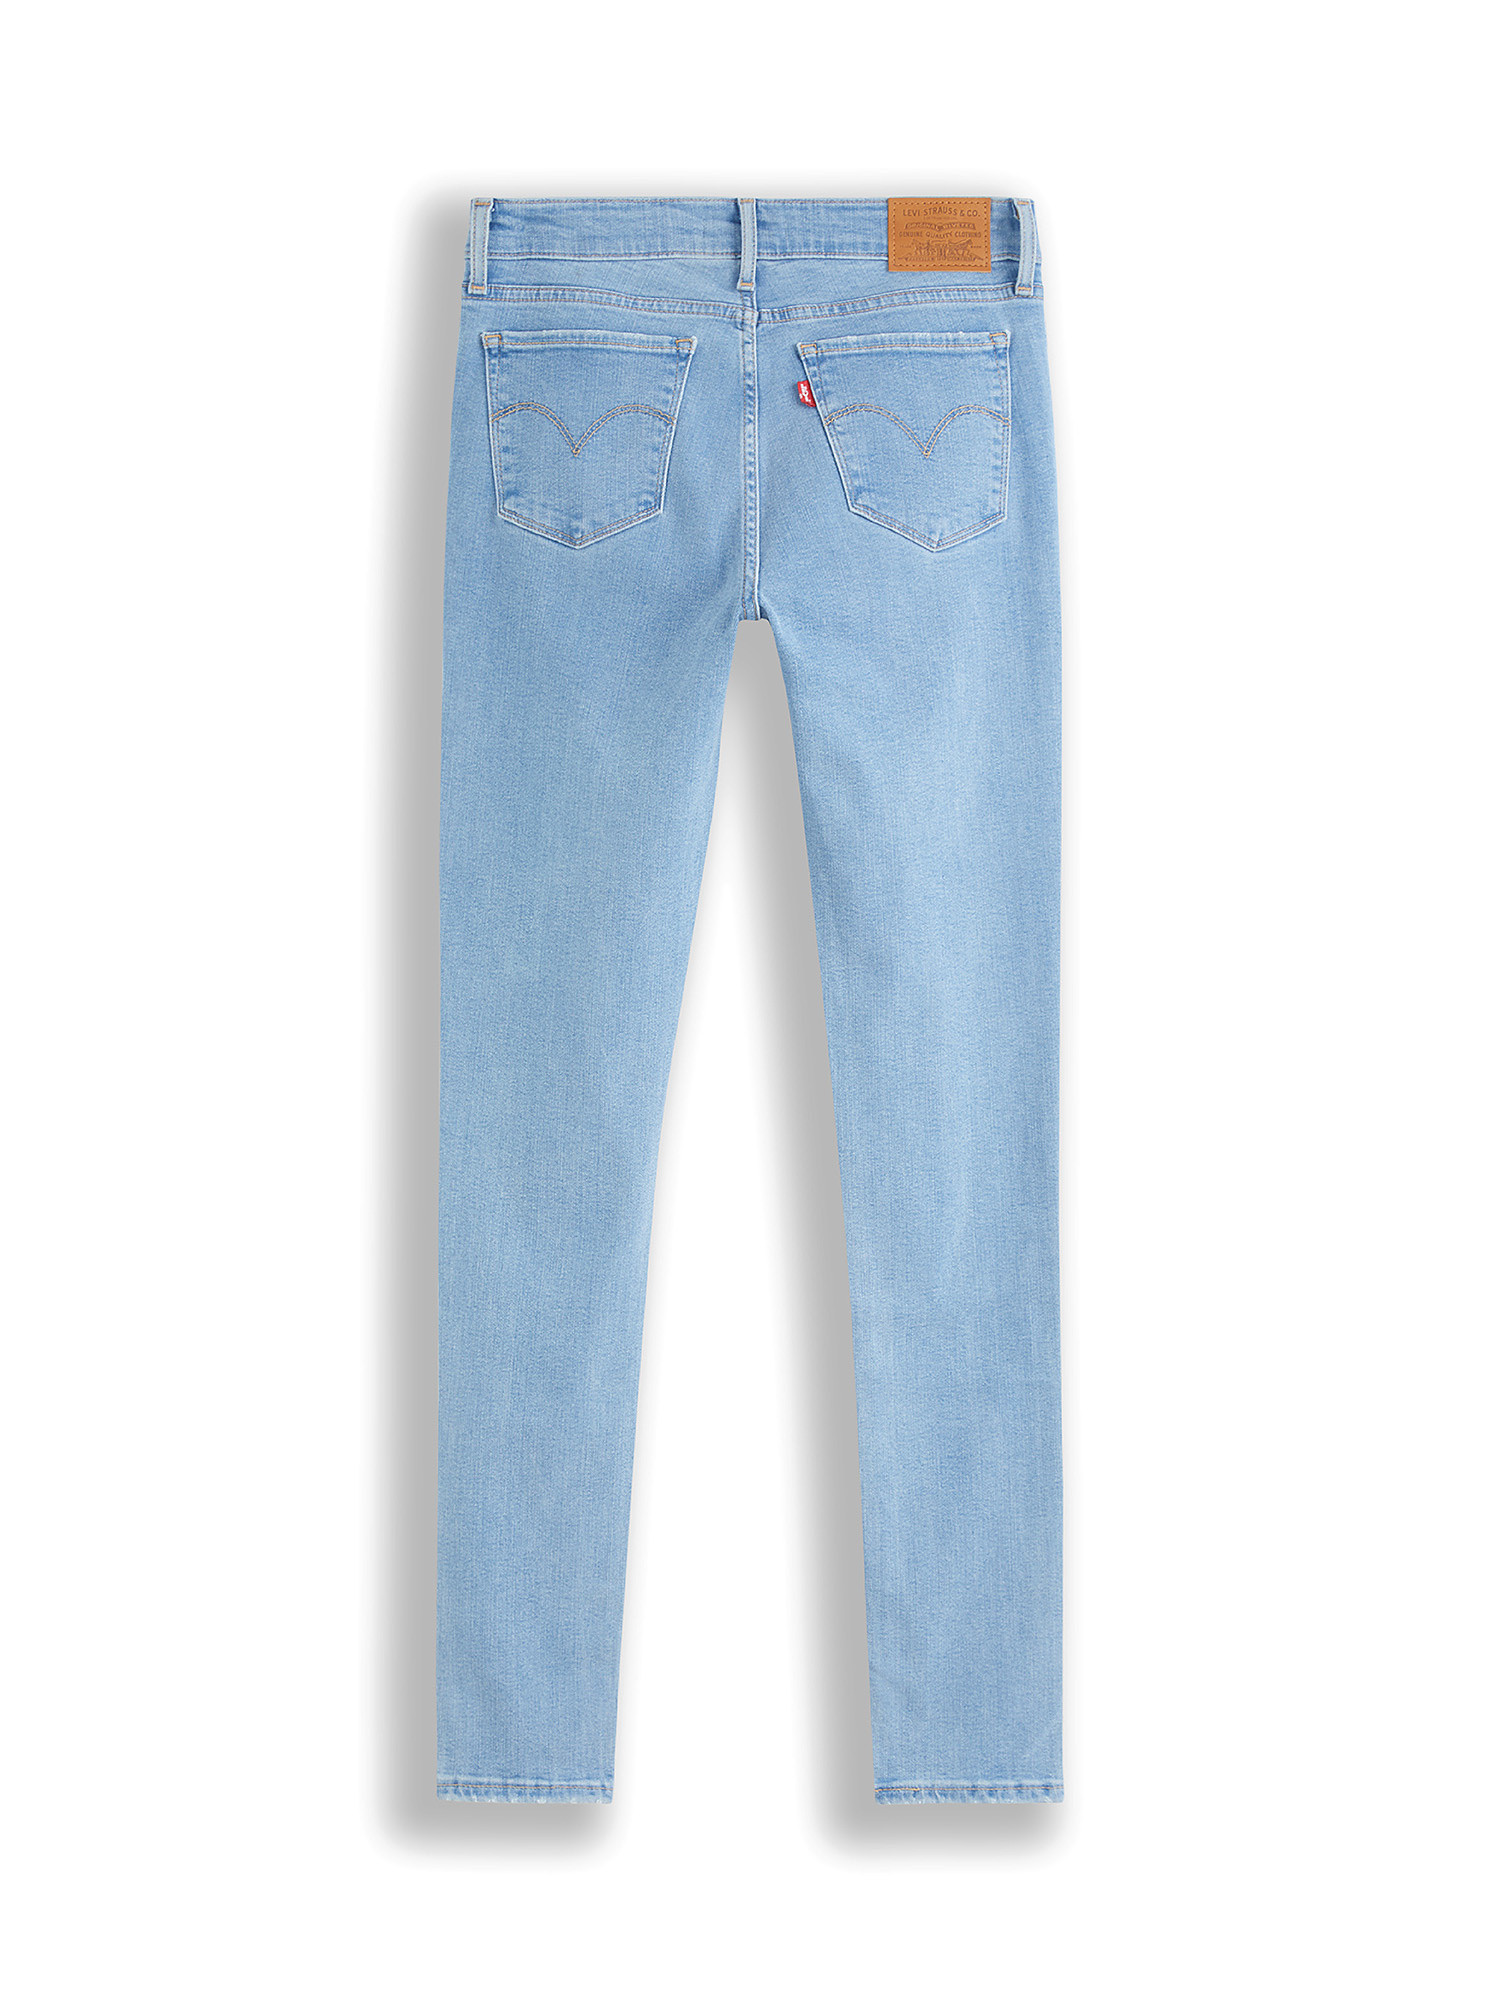 711 skinny jeans, Blu, large image number 1